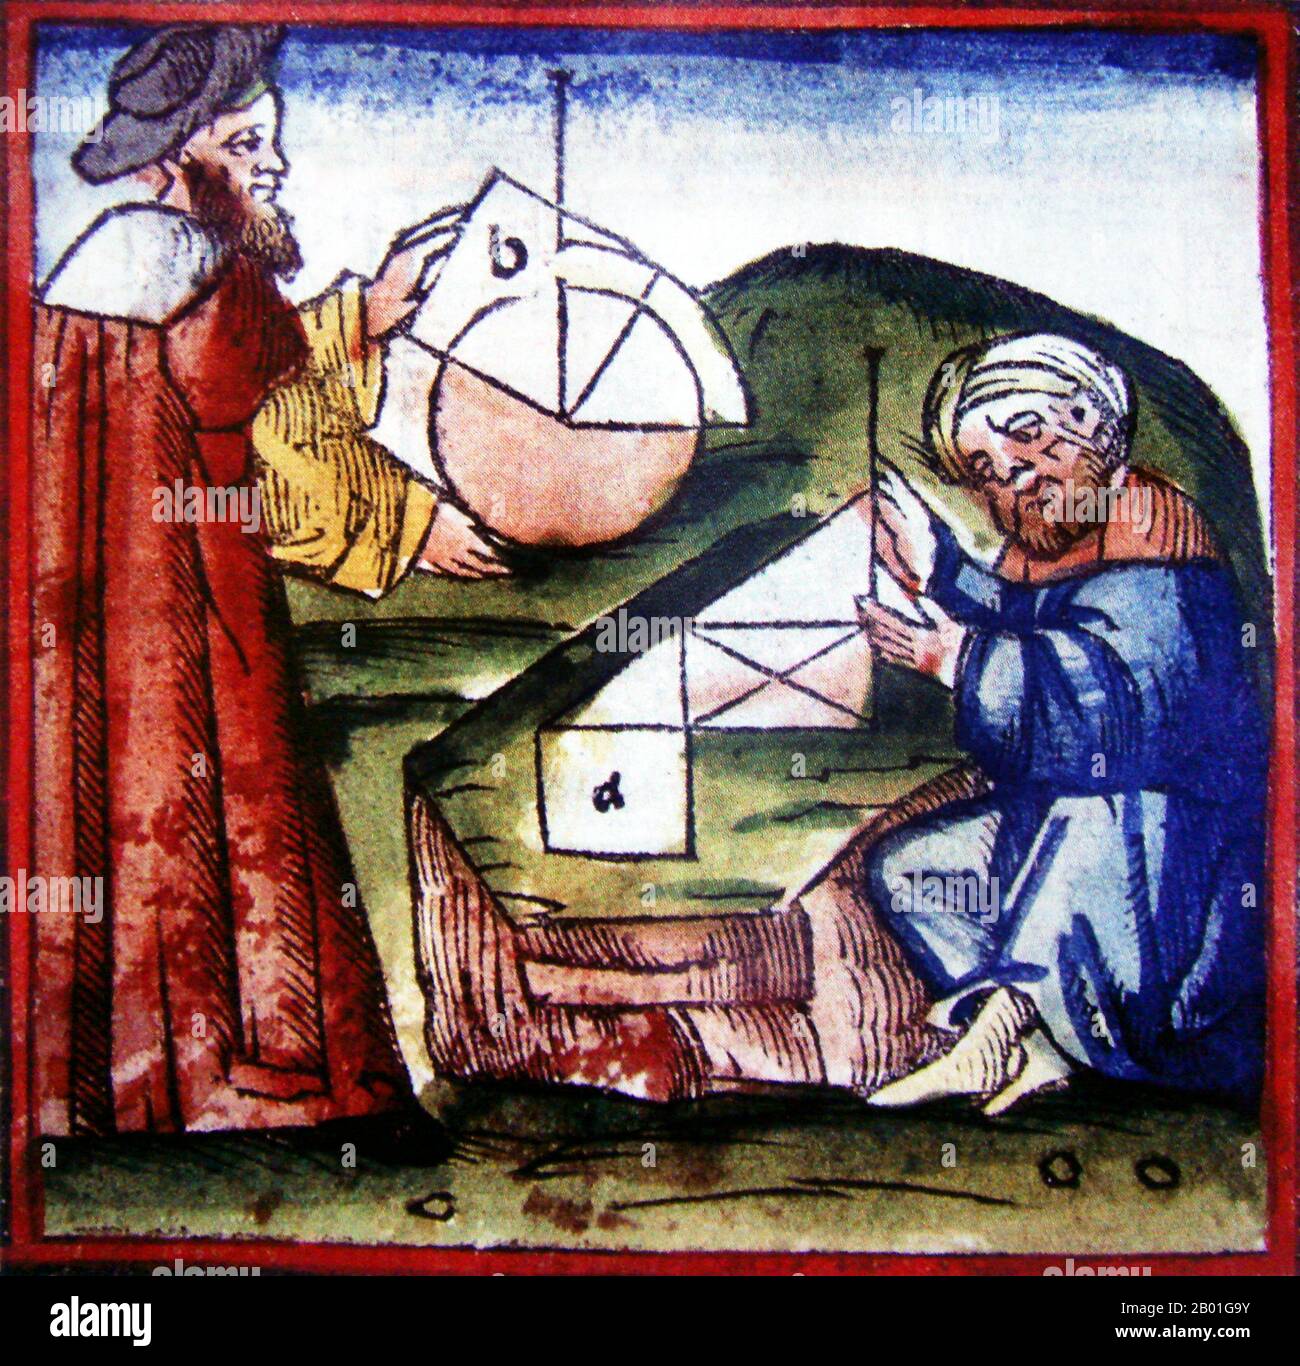 Espagne/Al-Andalus: Un scientifique musulman censé être Ibn Tufail (1105-1185) et un scientifique chrétien censément Euclid (300 BCE) faisant des calculs géométriques, à partir d'un manuscrit de 15th siècle. Ibn Tufail (nom complet: Abu Bakr Muhammad ibn Abd al-Malik ibn Muhammad ibn Tufail al-Qaisi al-Andalusi) était un polymath musulman andalou, écrivain, romancier, philosophe islamique, théologien islamique, médecin, astronome, vizier et fonctionnaire de la cour. En tant que philosophe et romancier, il est plus célèbre pour avoir écrit le premier roman philosophique, Hayy ibn Yaqdhan, également connu sous le nom de Philosophus Autodidactus. Banque D'Images